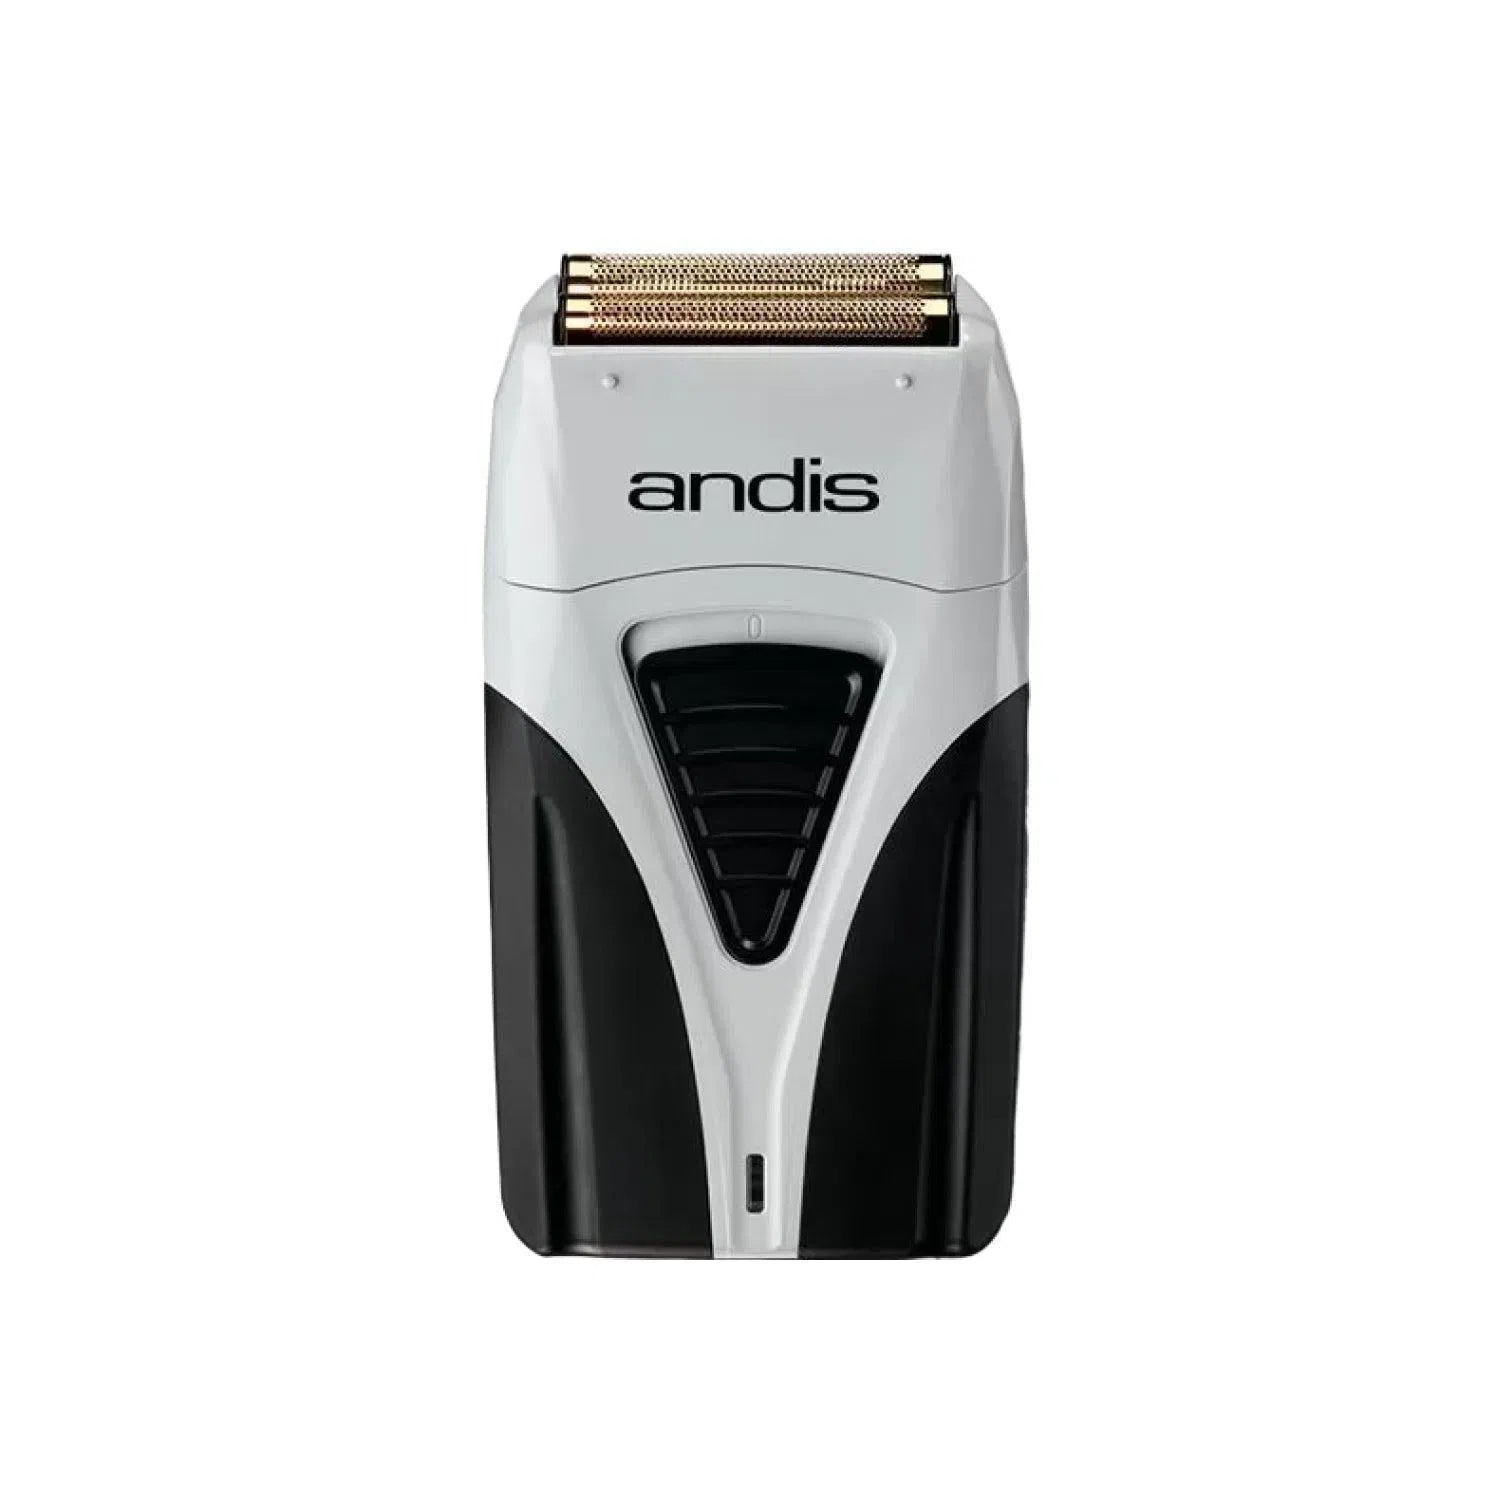 Шейвер Andis Pro Foil Lithium Plus Shaver TS 2-AN 17260-Andis-Blade Runner Shop | Інтернет-магазин інструментів для перукарів (1)